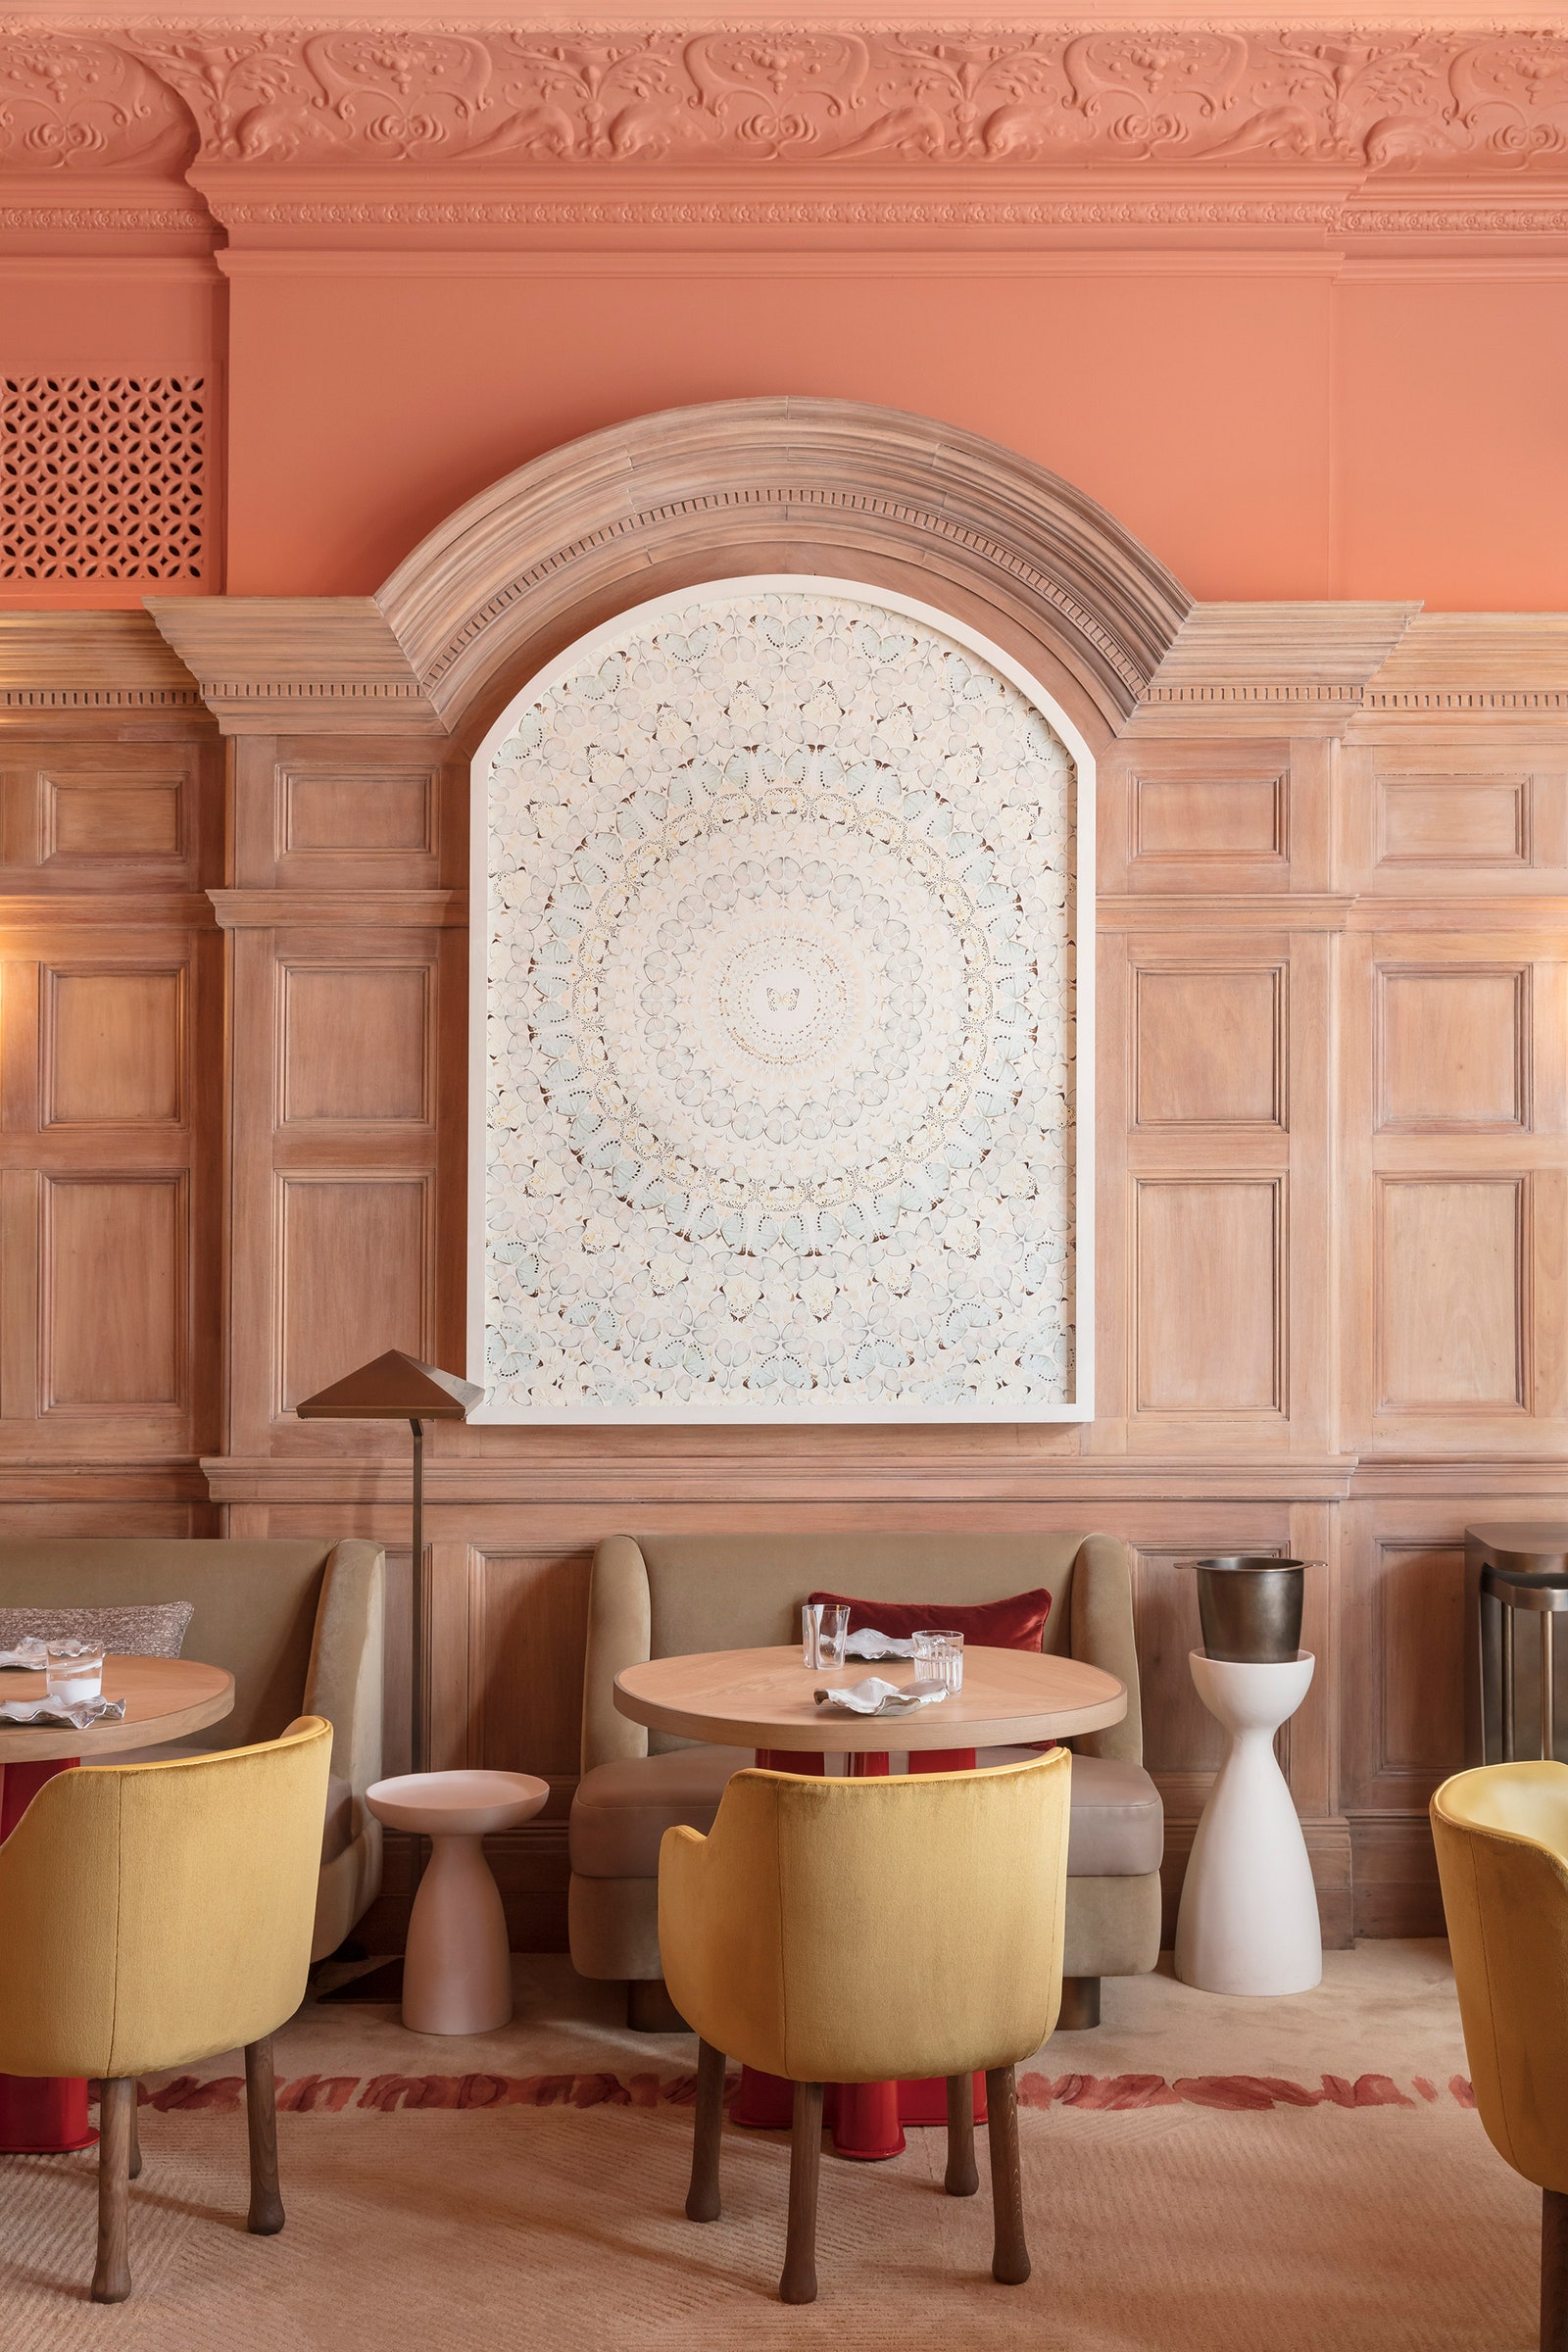 Обновленный ресторан Hlène Darroze по проекту Пьера Йовановича в Лондоне